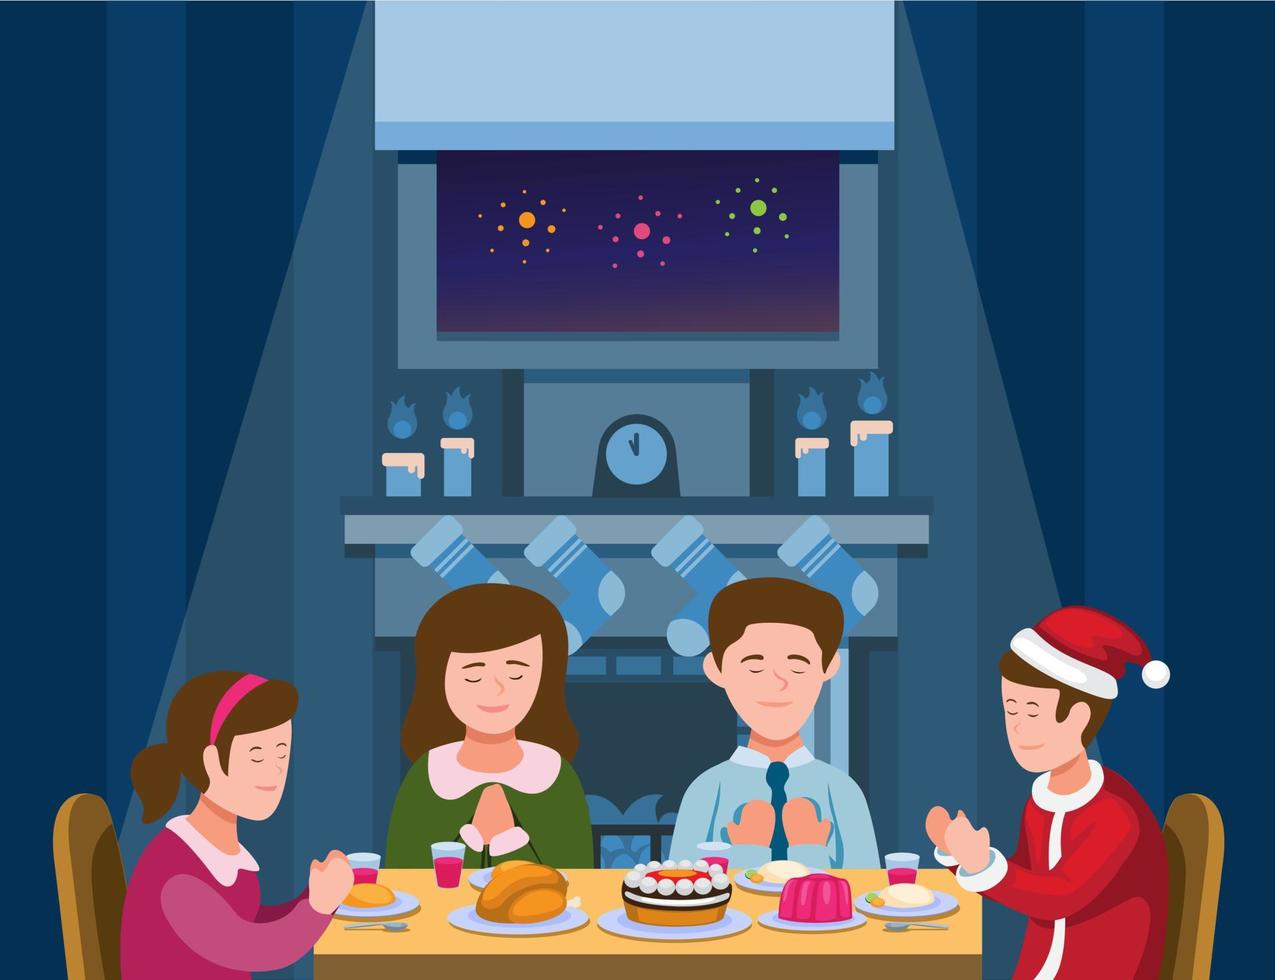 Familienweihnachtsessen. Familie betet vor dem Essen im Weihnachts- oder Neujahrssaison-Illustrationsvektor vektor